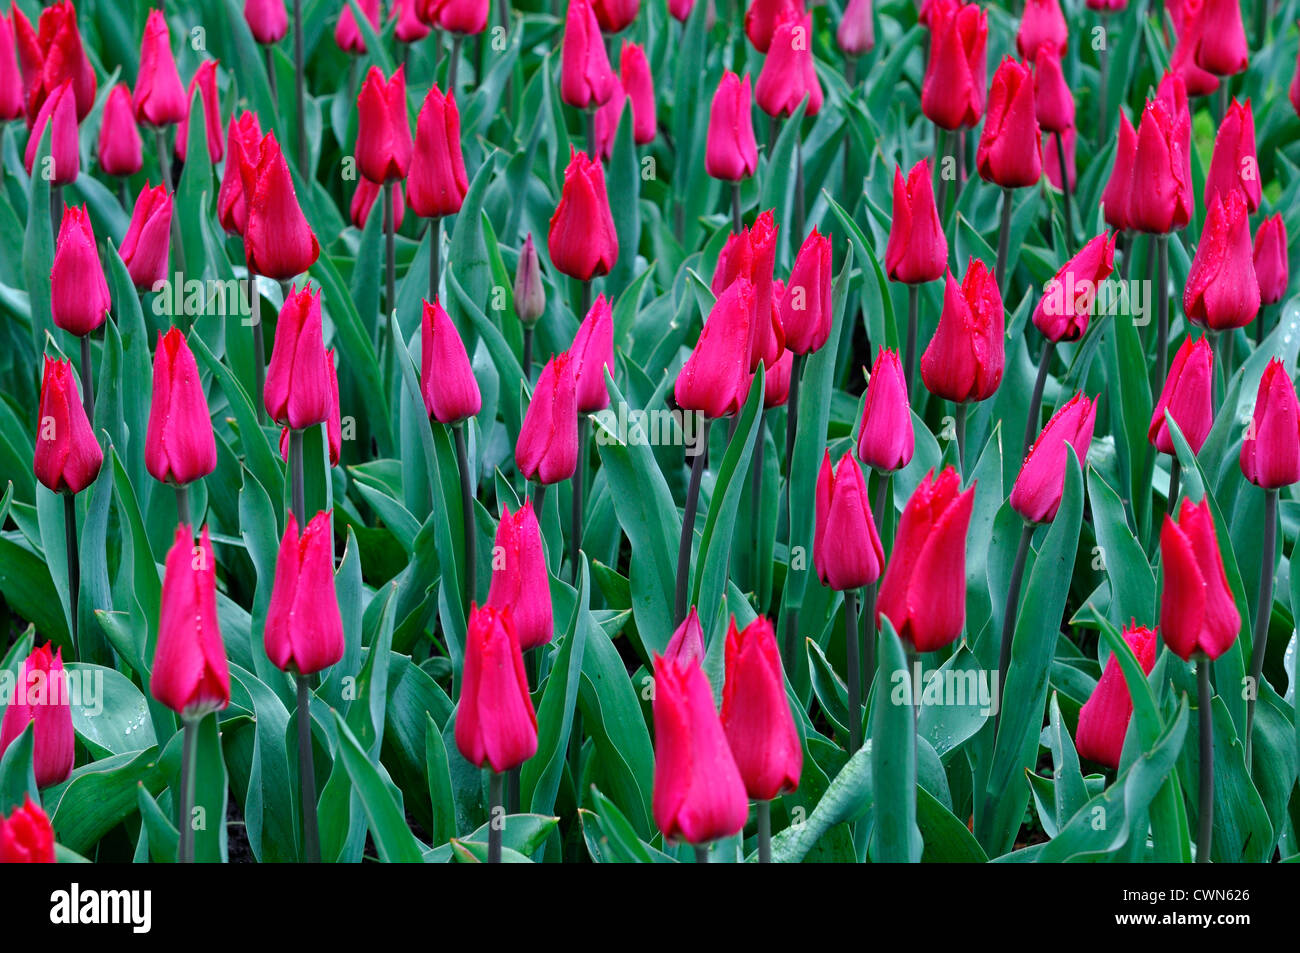 Tulipa Rot Glanz Lilie blühenden Tulpen Blumen Anzeige Frühling Blüte Blüte Bett Farbe Farbe Blumenzwiebel Stockfoto